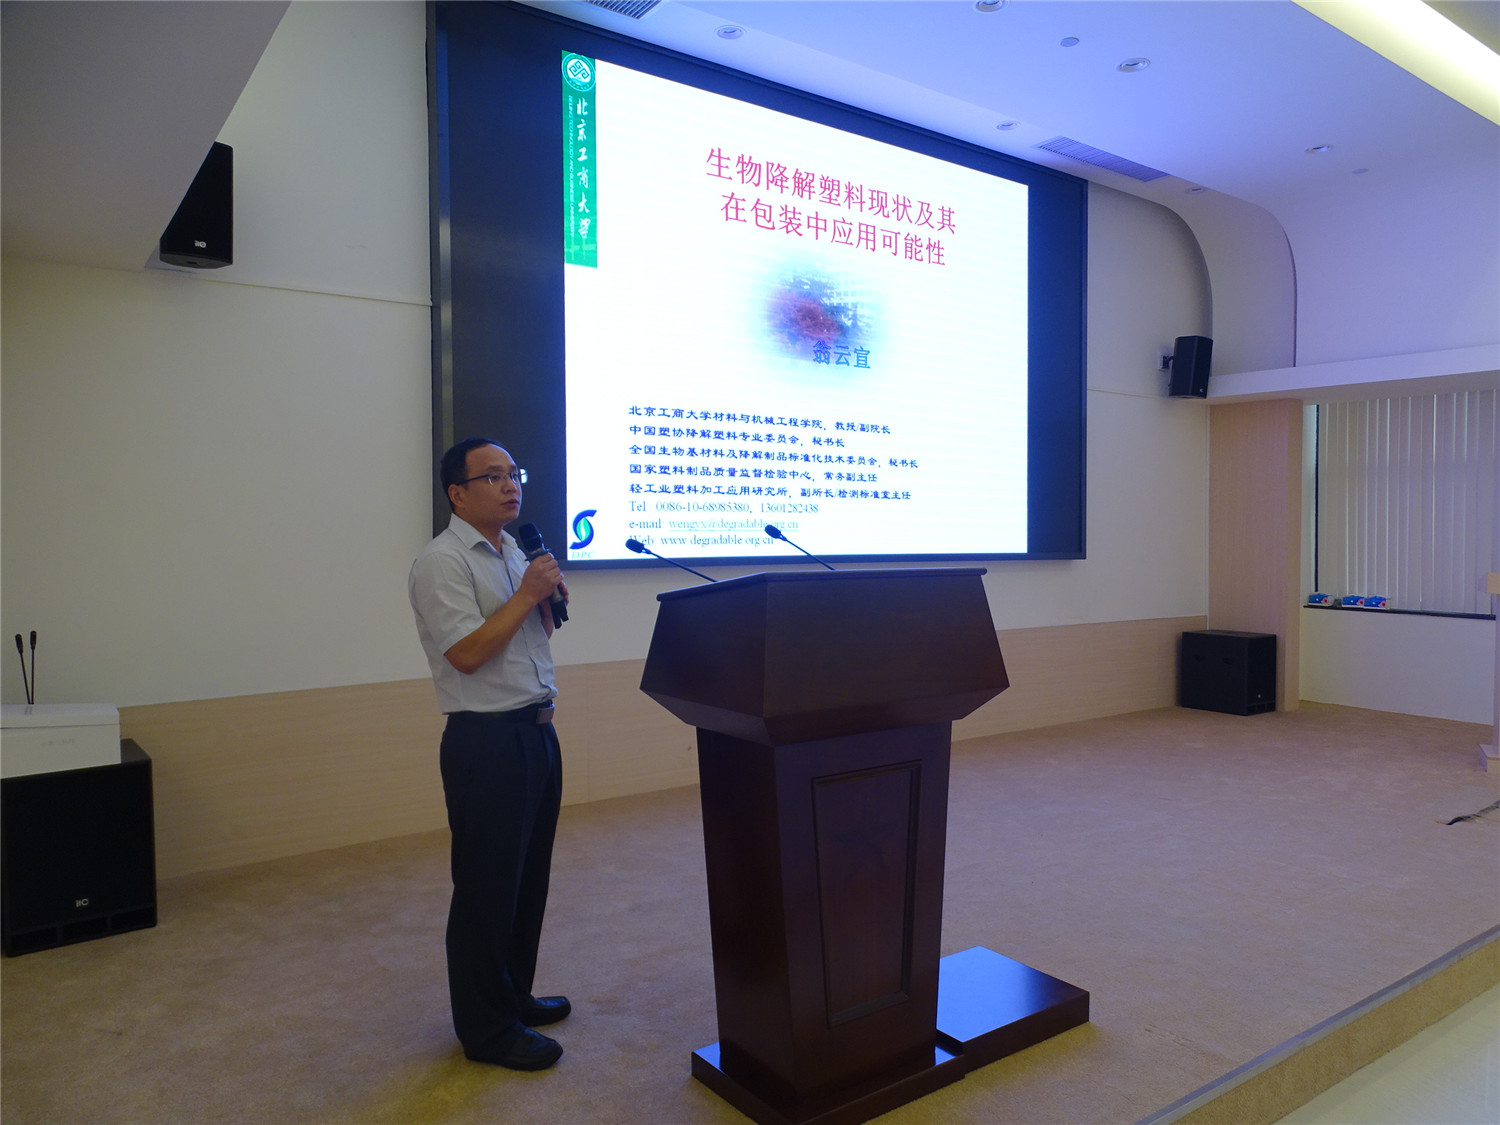 北京工商大学教授、博士生导师翁云宣发表演讲